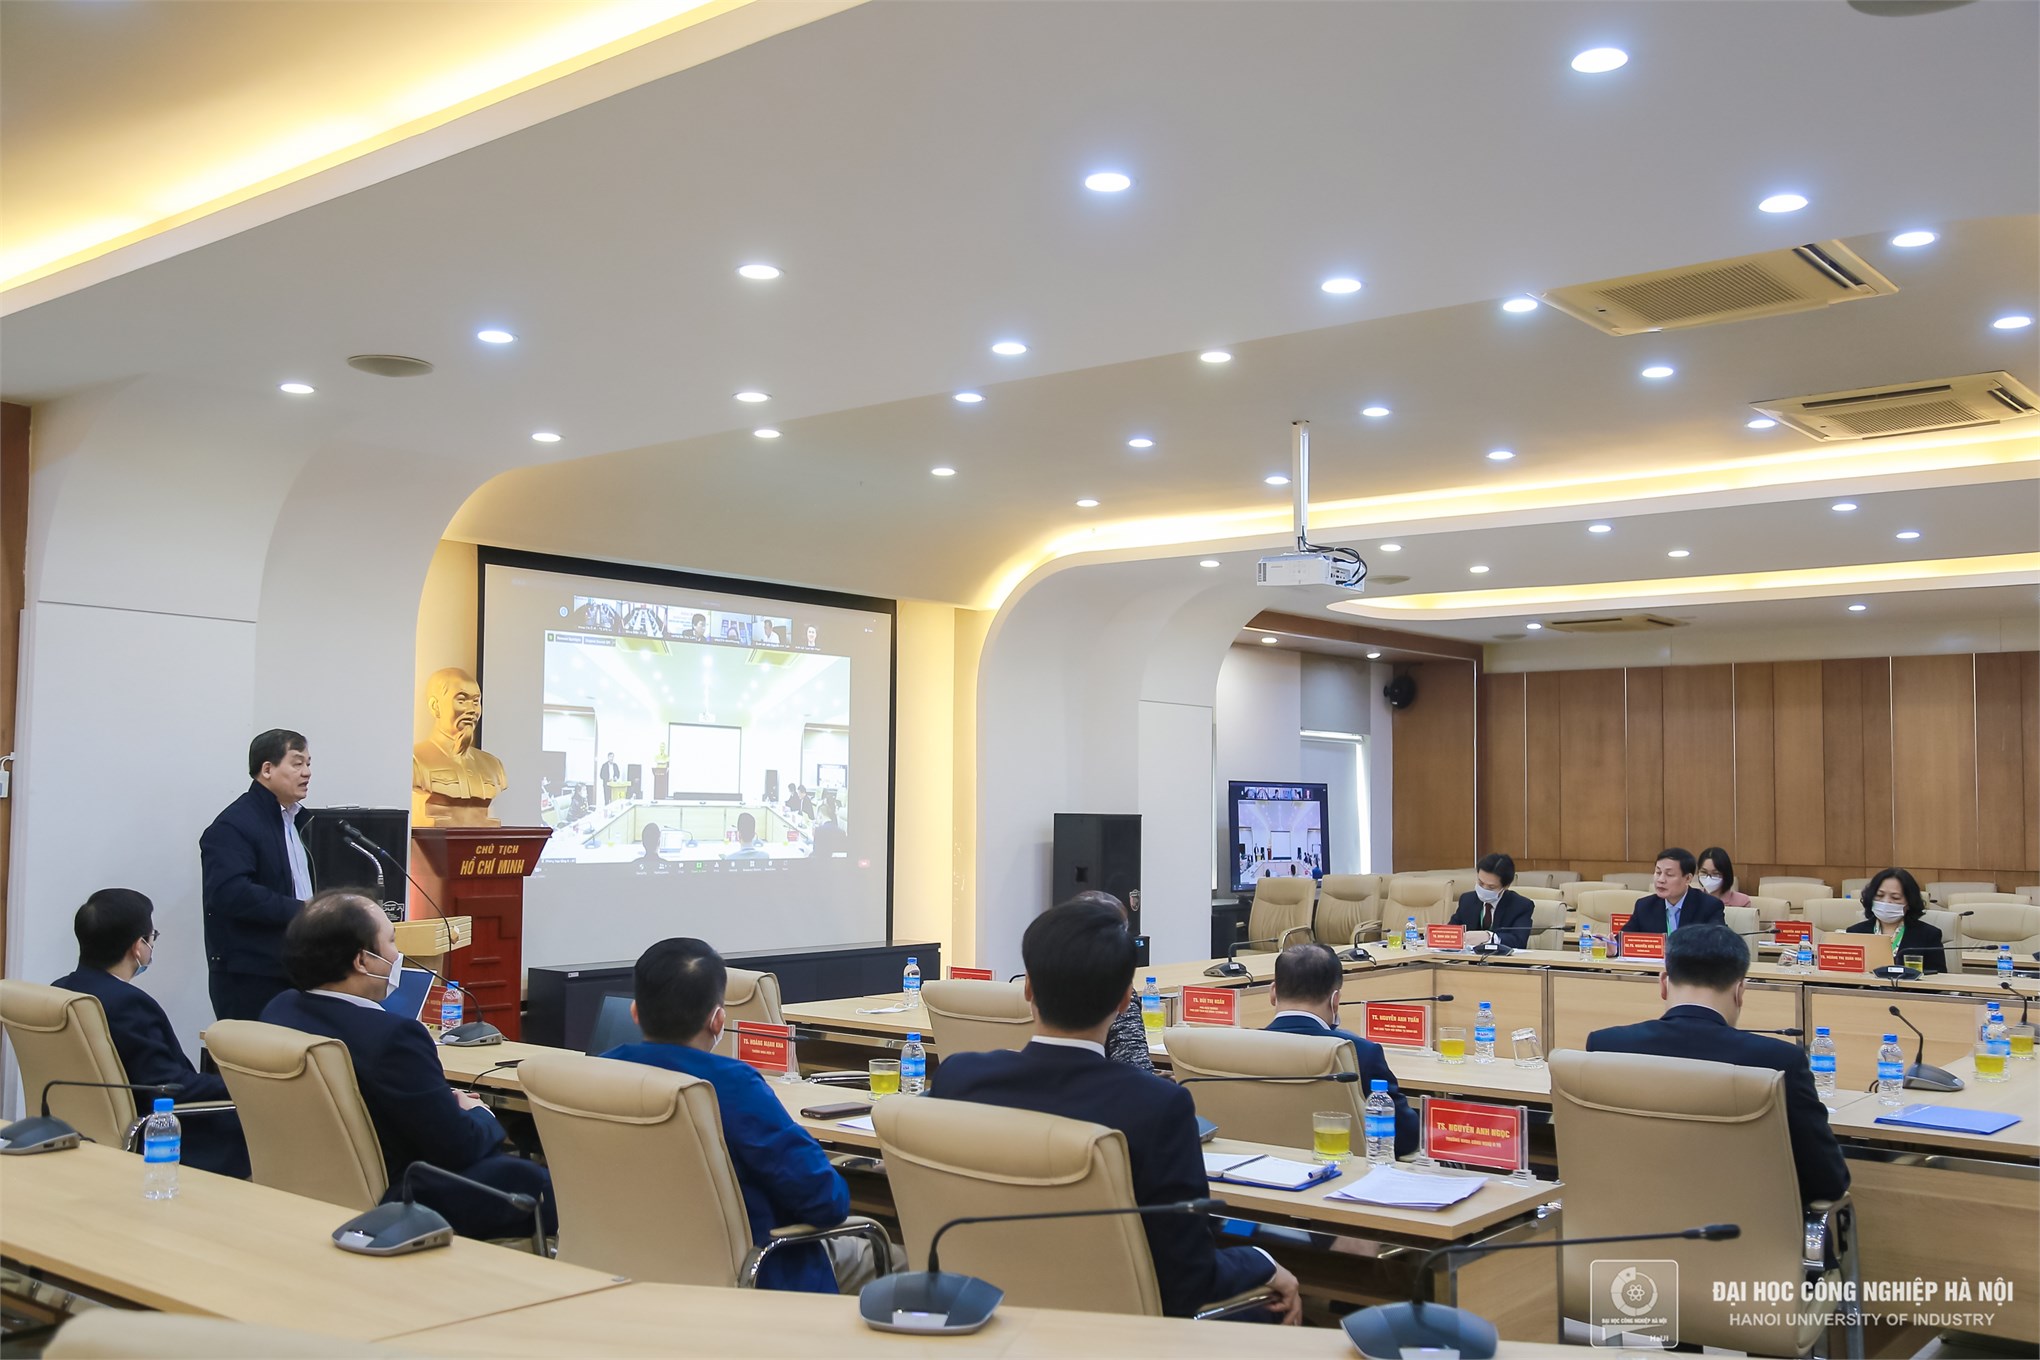 Tổ chức đánh giá ngoài 04 chương trình đào tạo tại Đại học Công nghiệp Hà Nội